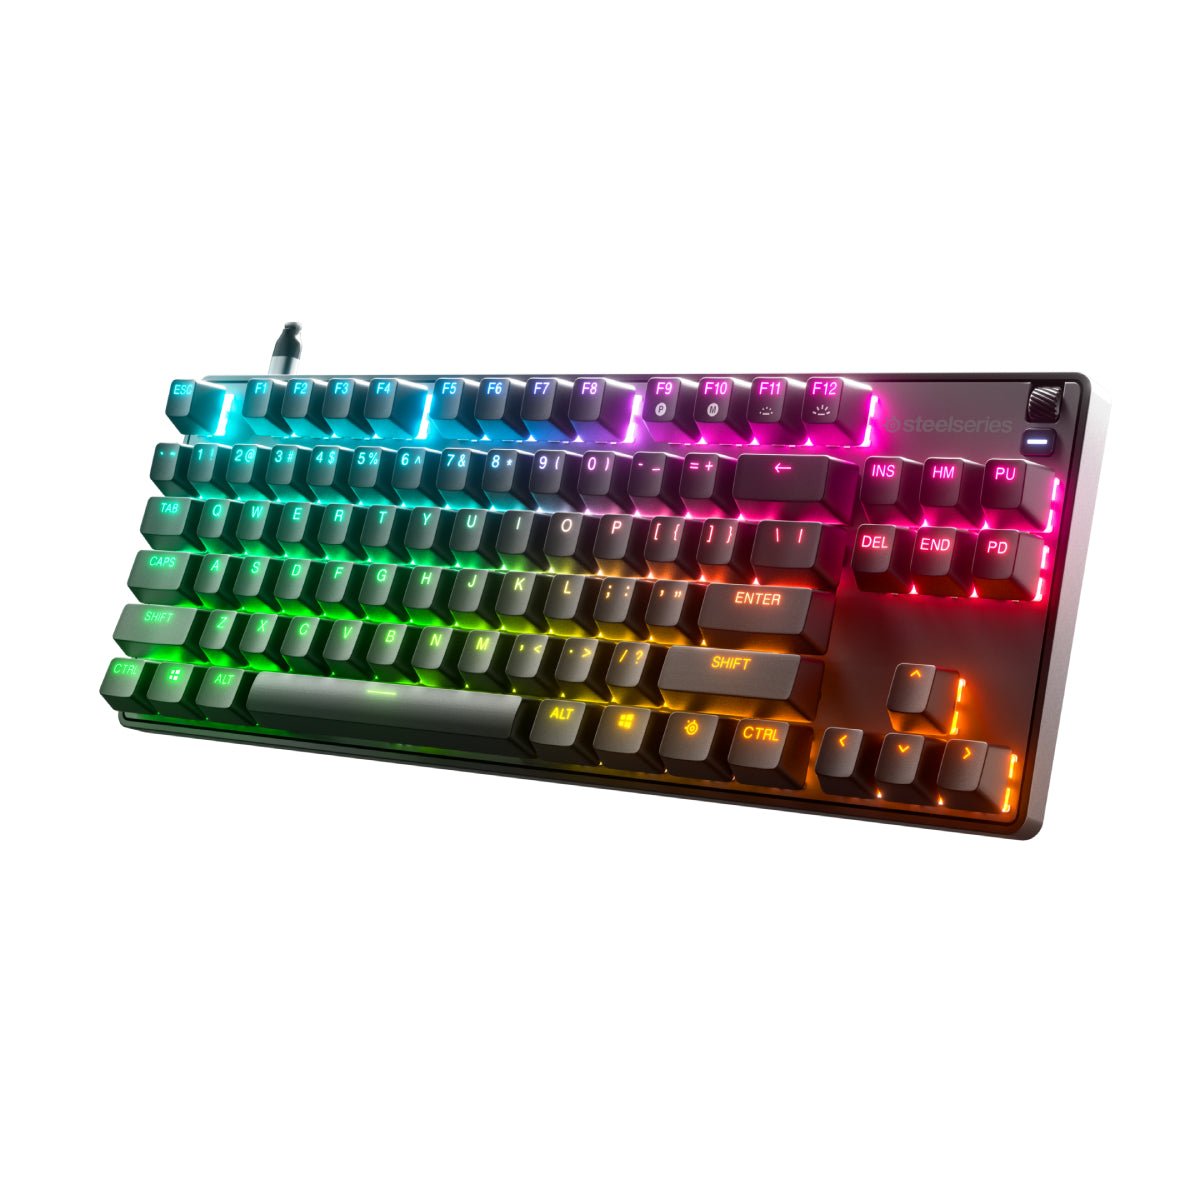 SteelSeries APEX 9 TKL RGB Wired Gaming Keyboard - Black - Store 974 | ستور ٩٧٤